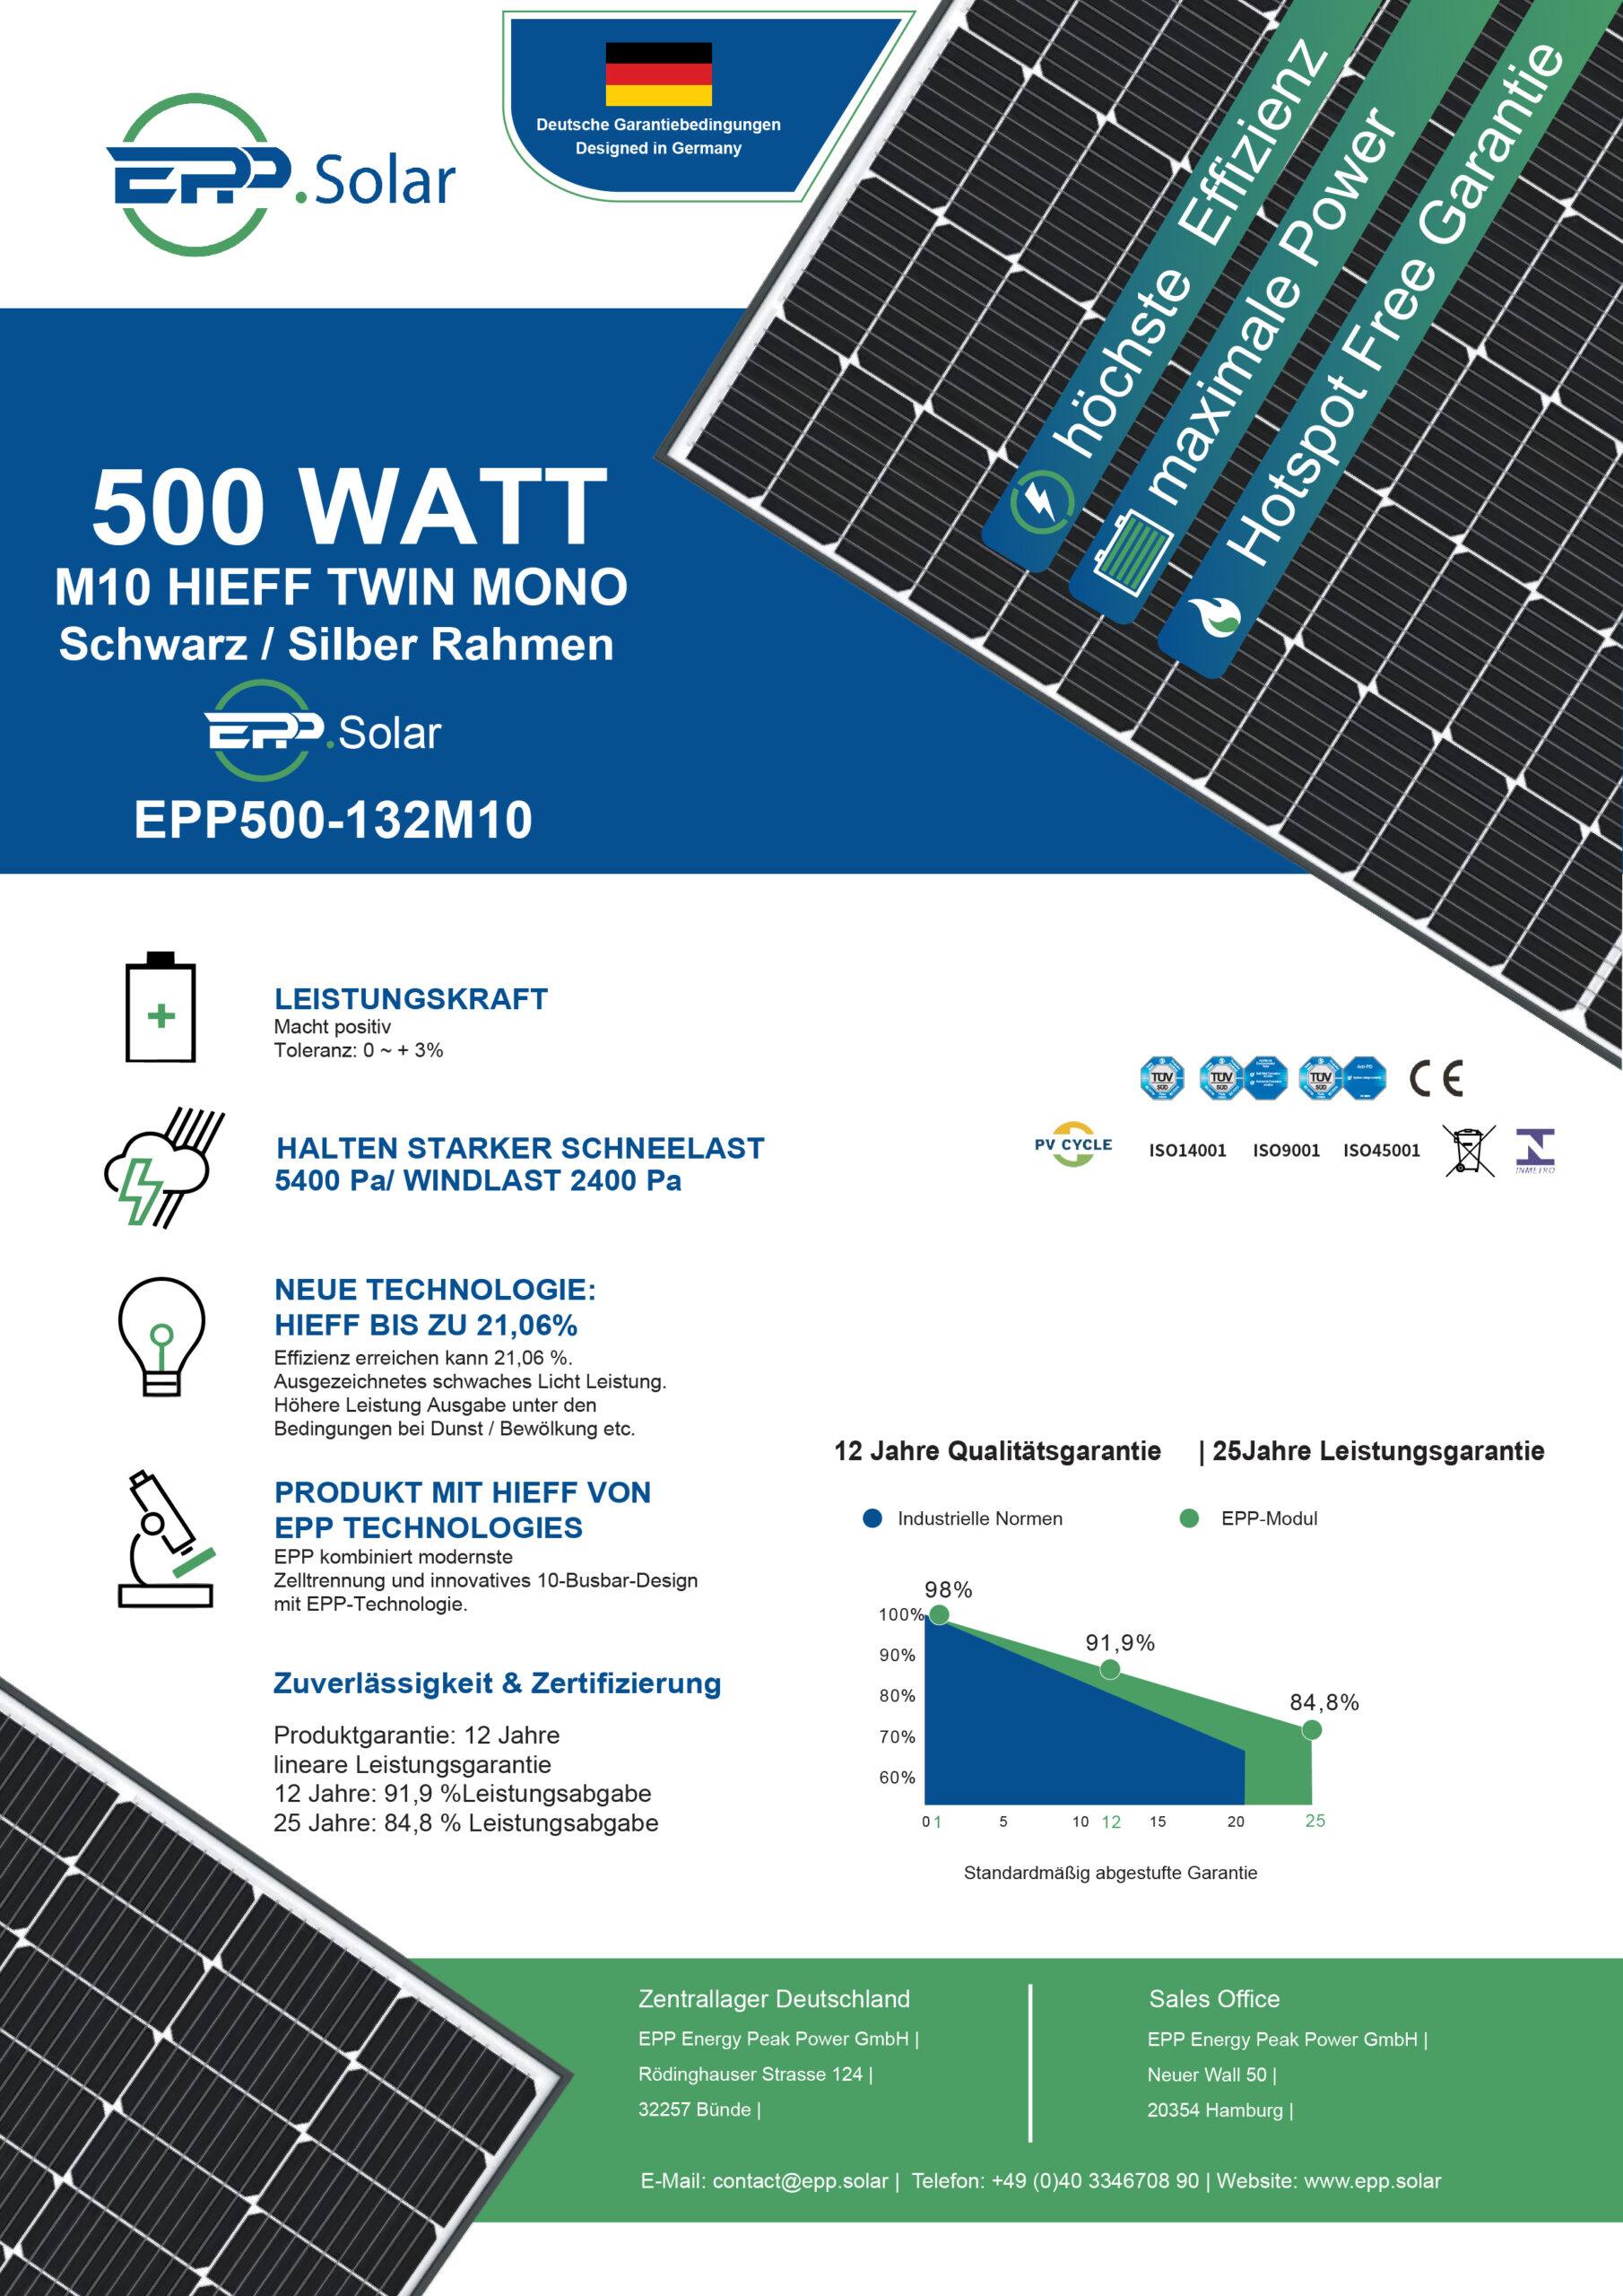 2000W Photovoltaik Balkonkraftwerk mit EPP 500W Solarmodule, Hoymiles  HMS-1600-4T Wechselrichter und DTU-WLite-S - epp shop